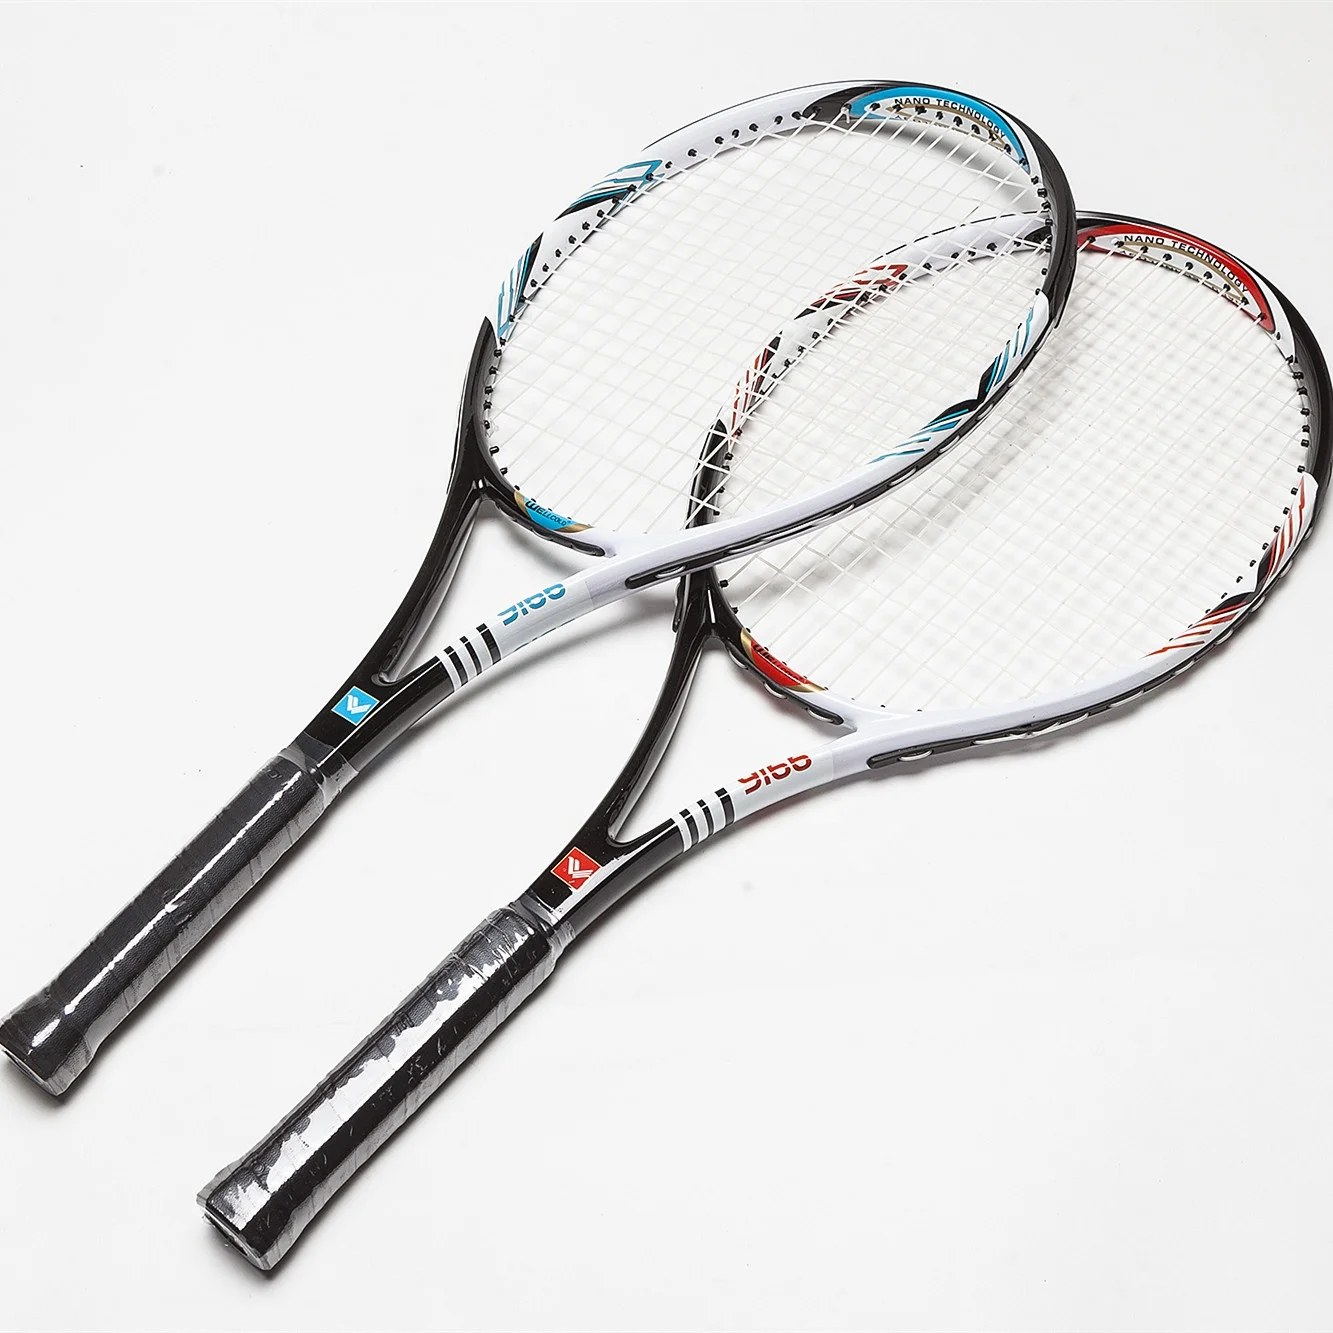 voorspelling Eerlijkheid negeren Custom Made Aluminium Tennis Racket,New Design Raquetas De Tenis Head For  Sale - Buy Custom Tennis Racket,Design Your Own Tennis Racket,Tennis Rackets  Product on Alibaba.com